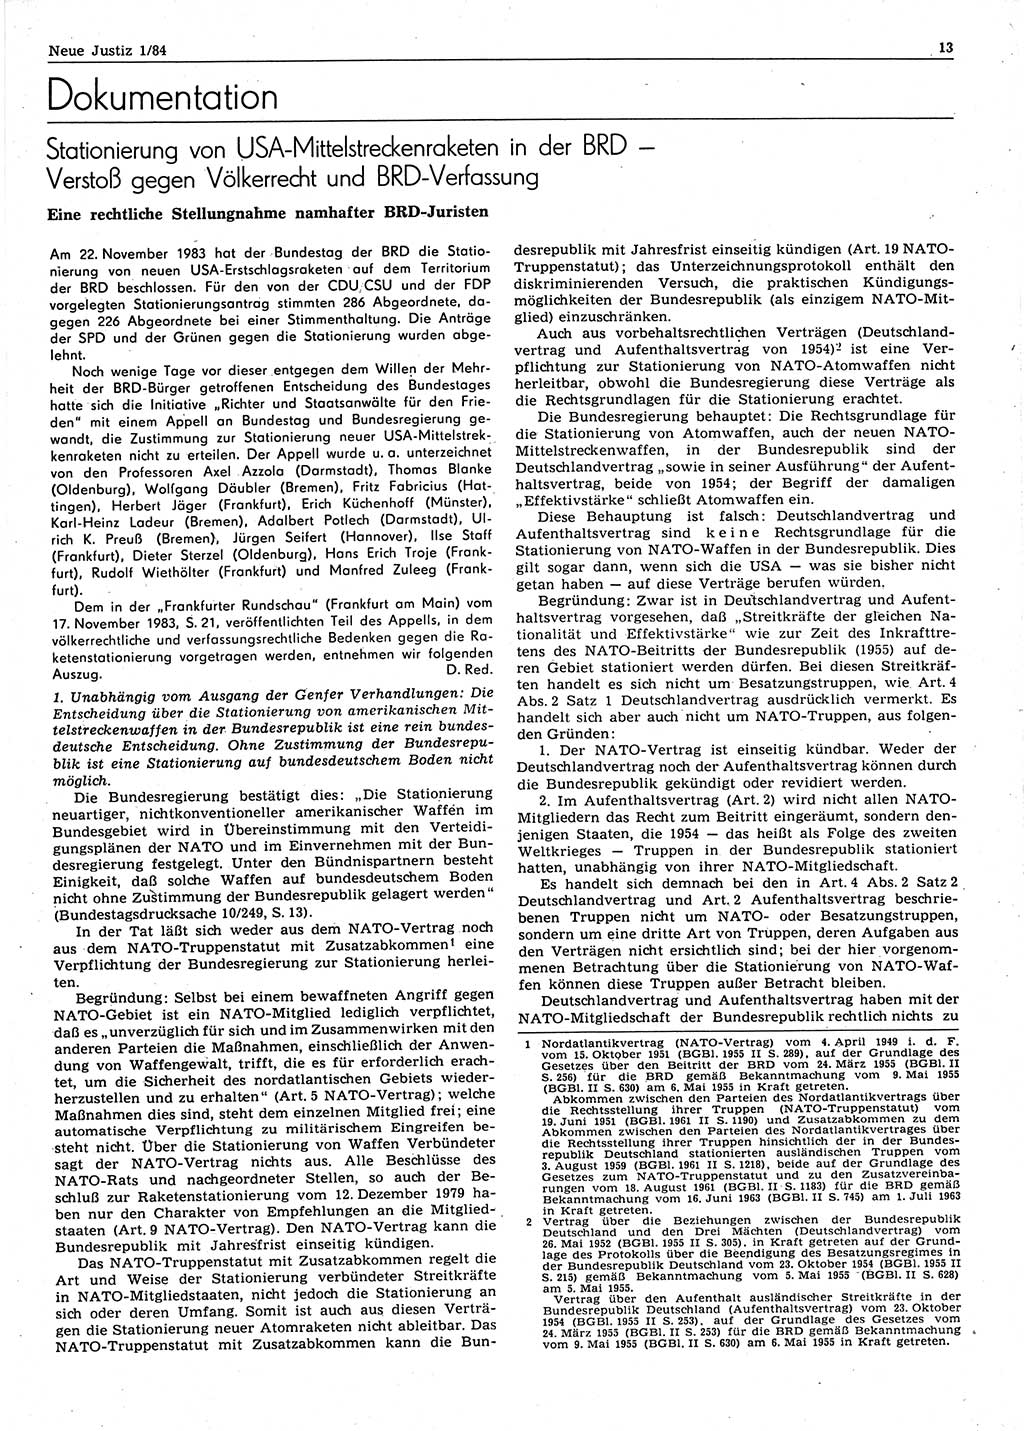 Neue Justiz (NJ), Zeitschrift für sozialistisches Recht und Gesetzlichkeit [Deutsche Demokratische Republik (DDR)], 38. Jahrgang 1984, Seite 13 (NJ DDR 1984, S. 13)